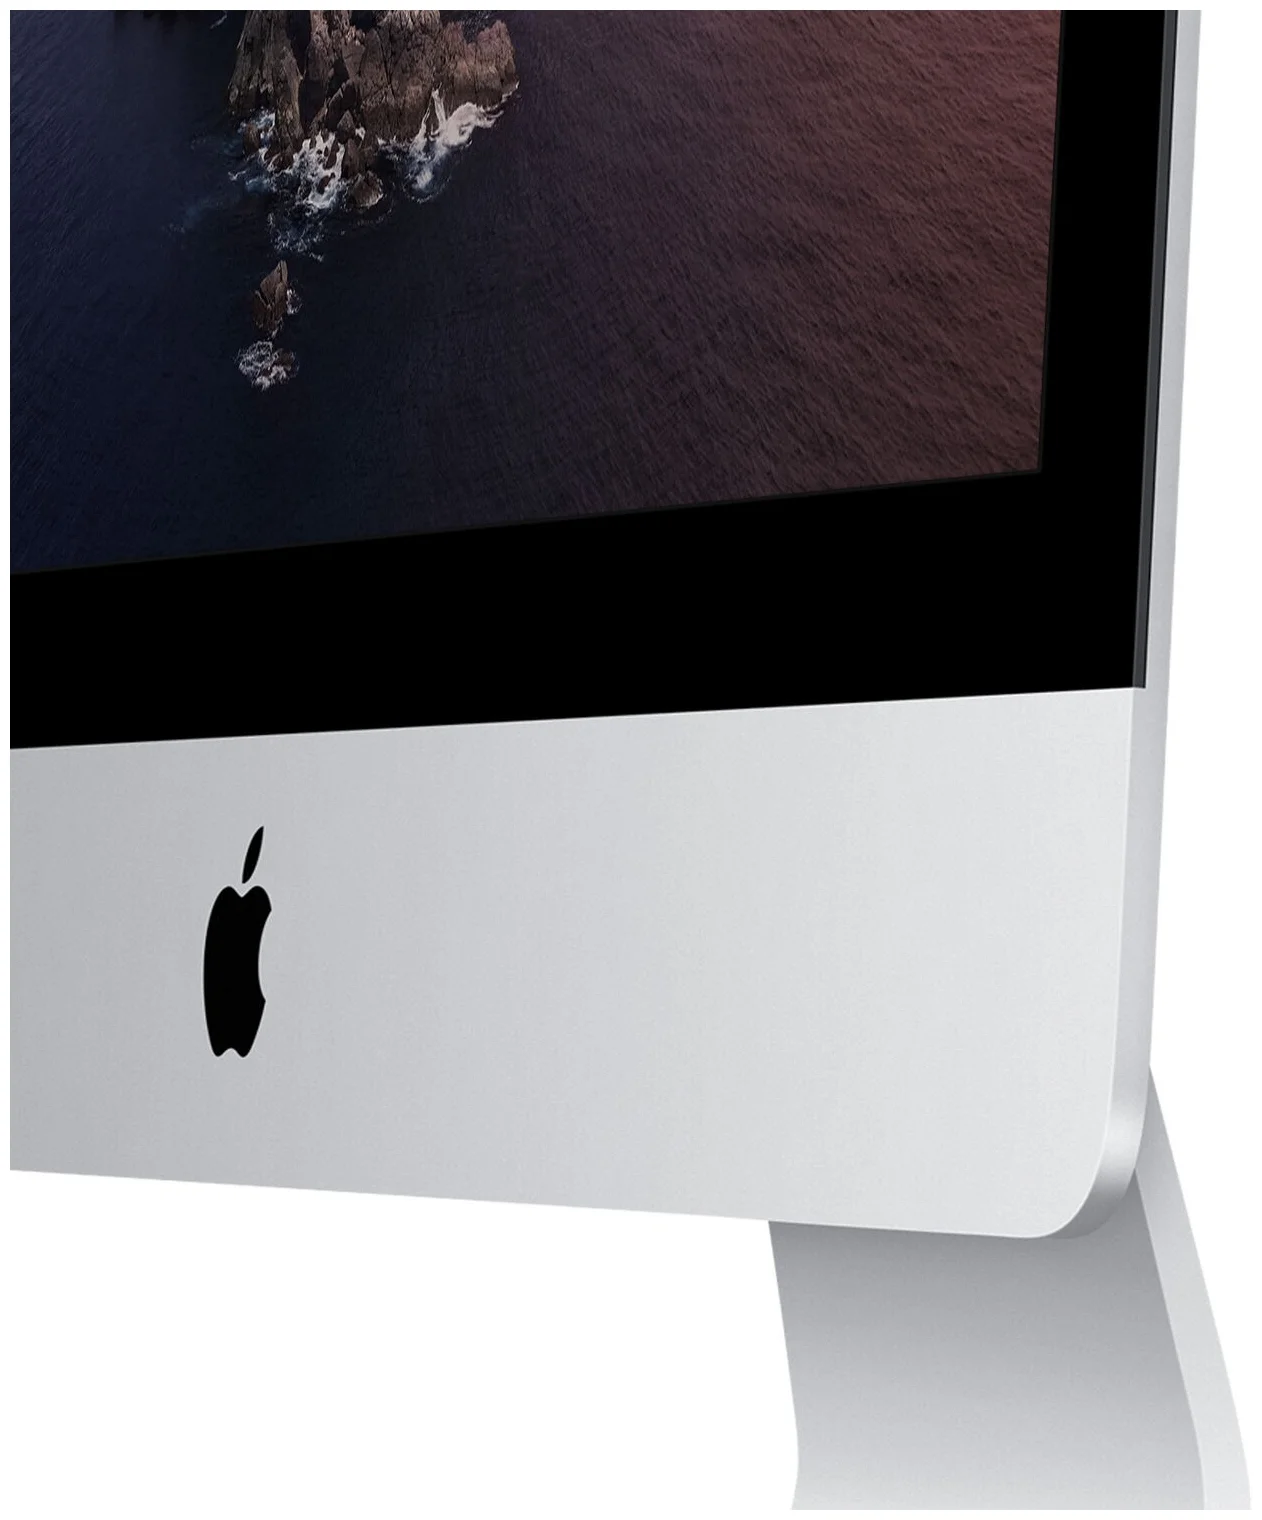 21.5" Apple iMac (2020 г.) - название видеокарты: Intel Iris Plus Graphics 640